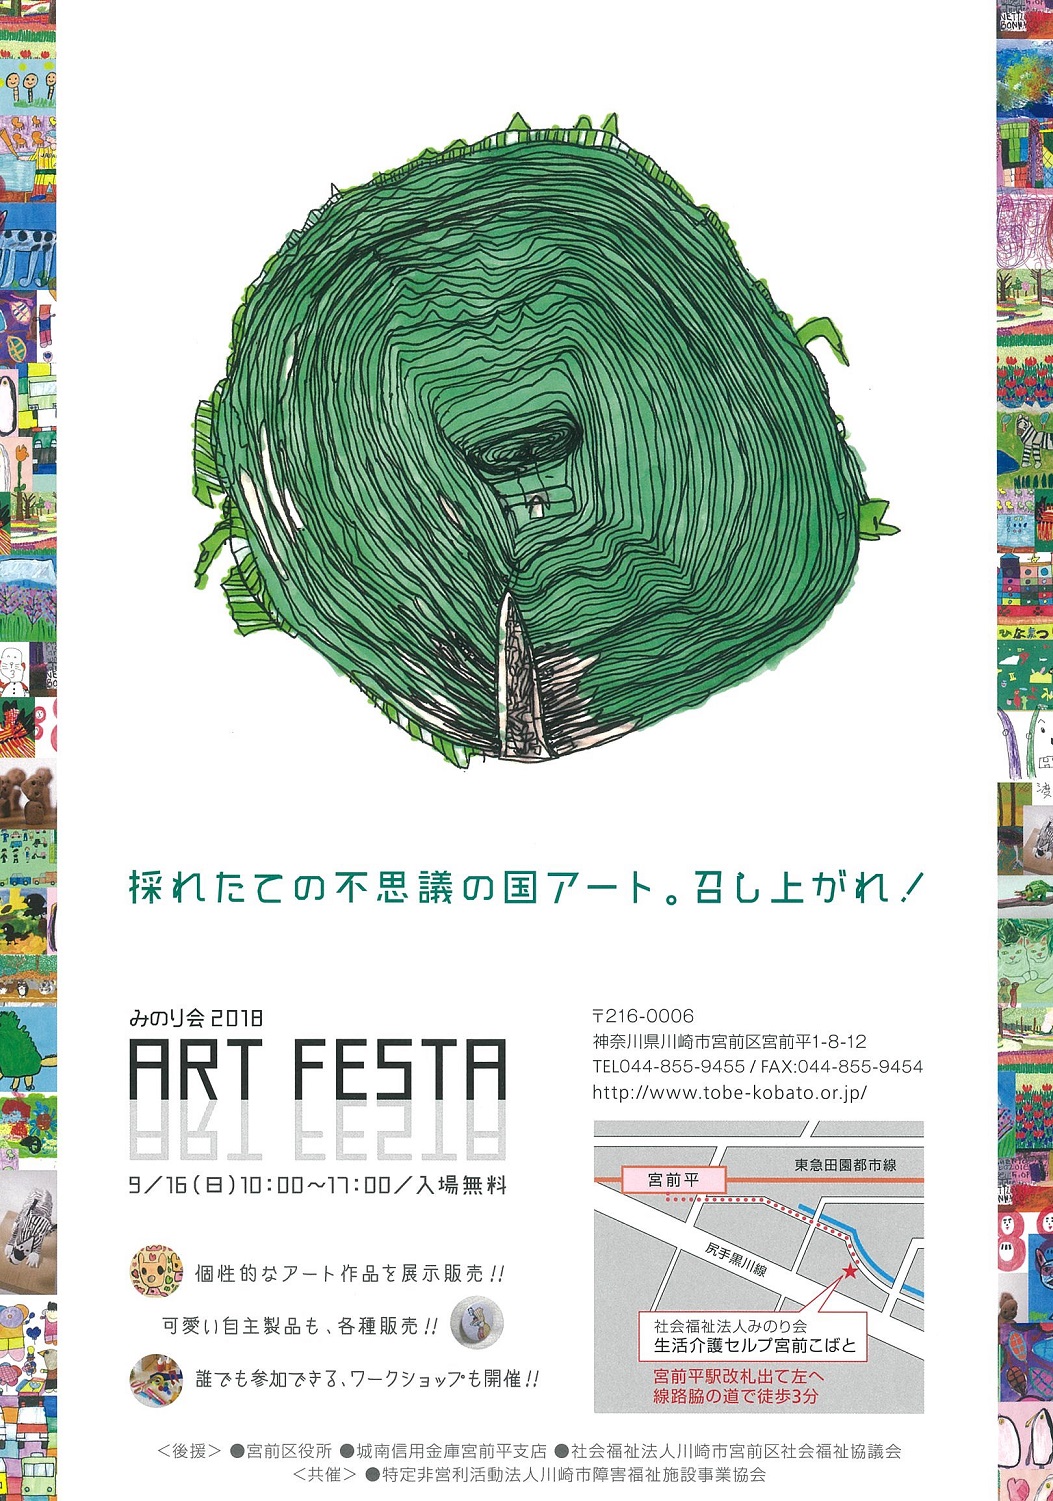 					みのり会 2018
「ART FESTA」	